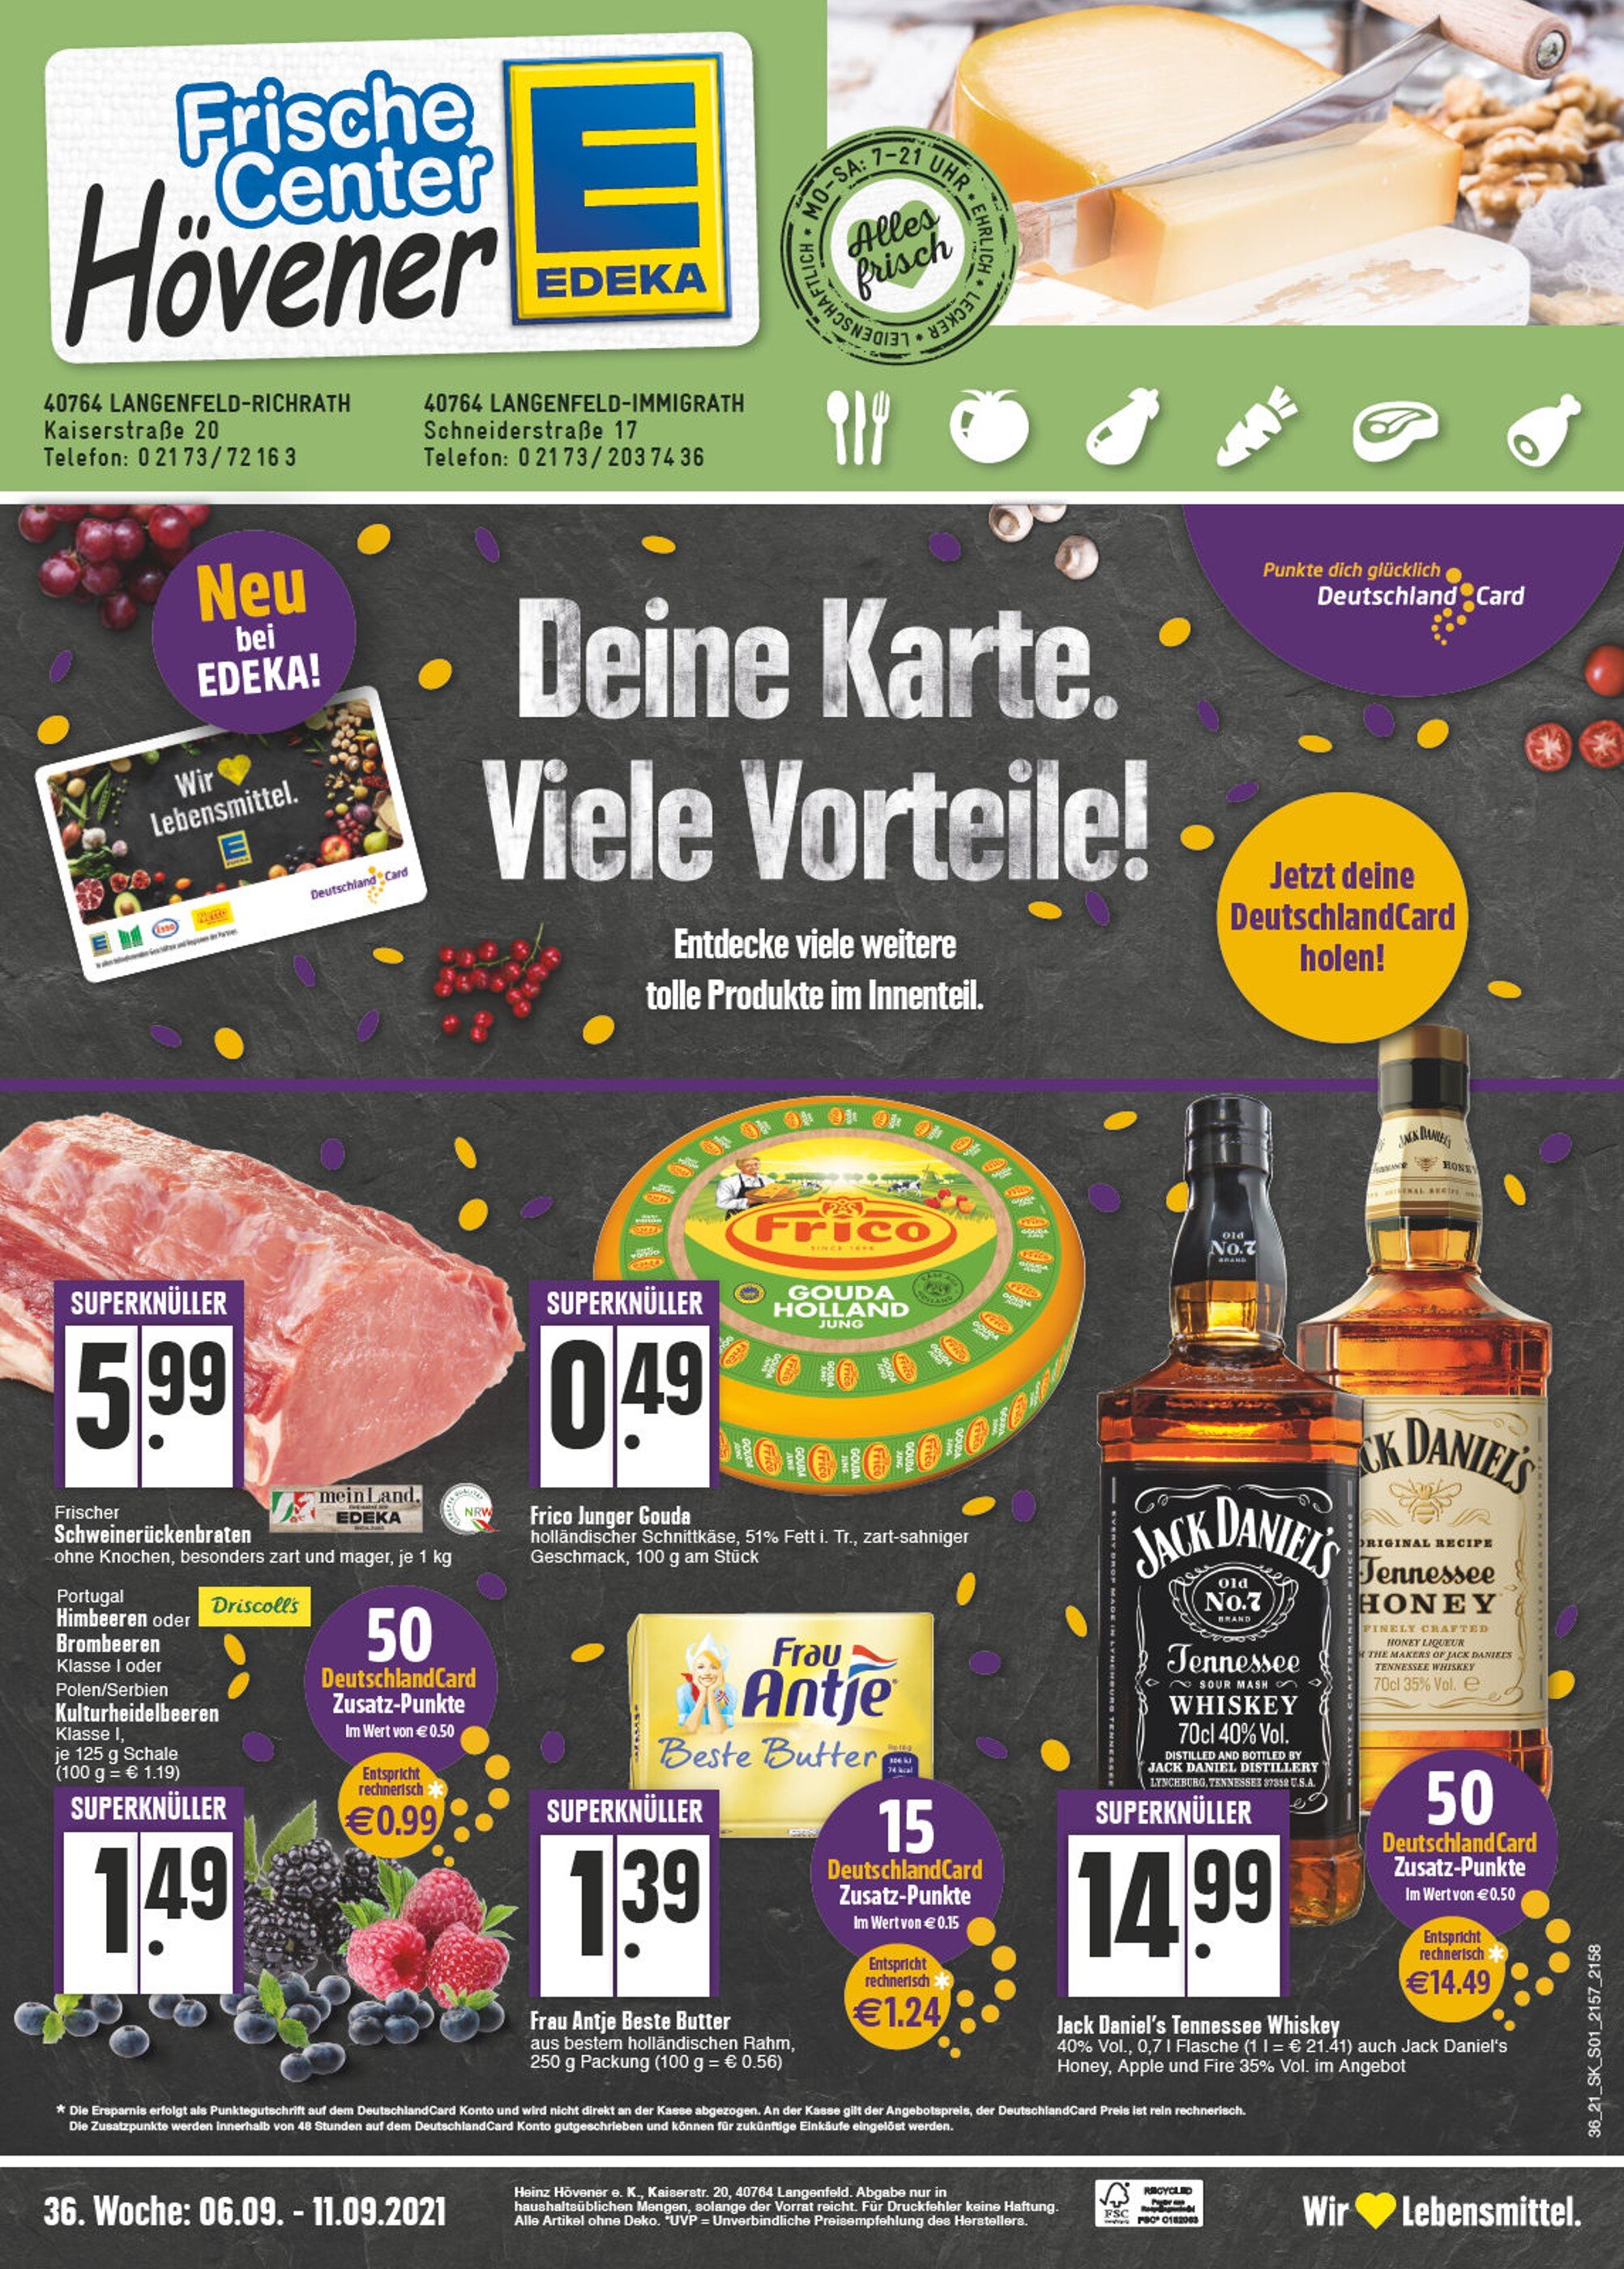 Trinkgut Getränkemarkt Langenfeld Aktuelle Angebote im